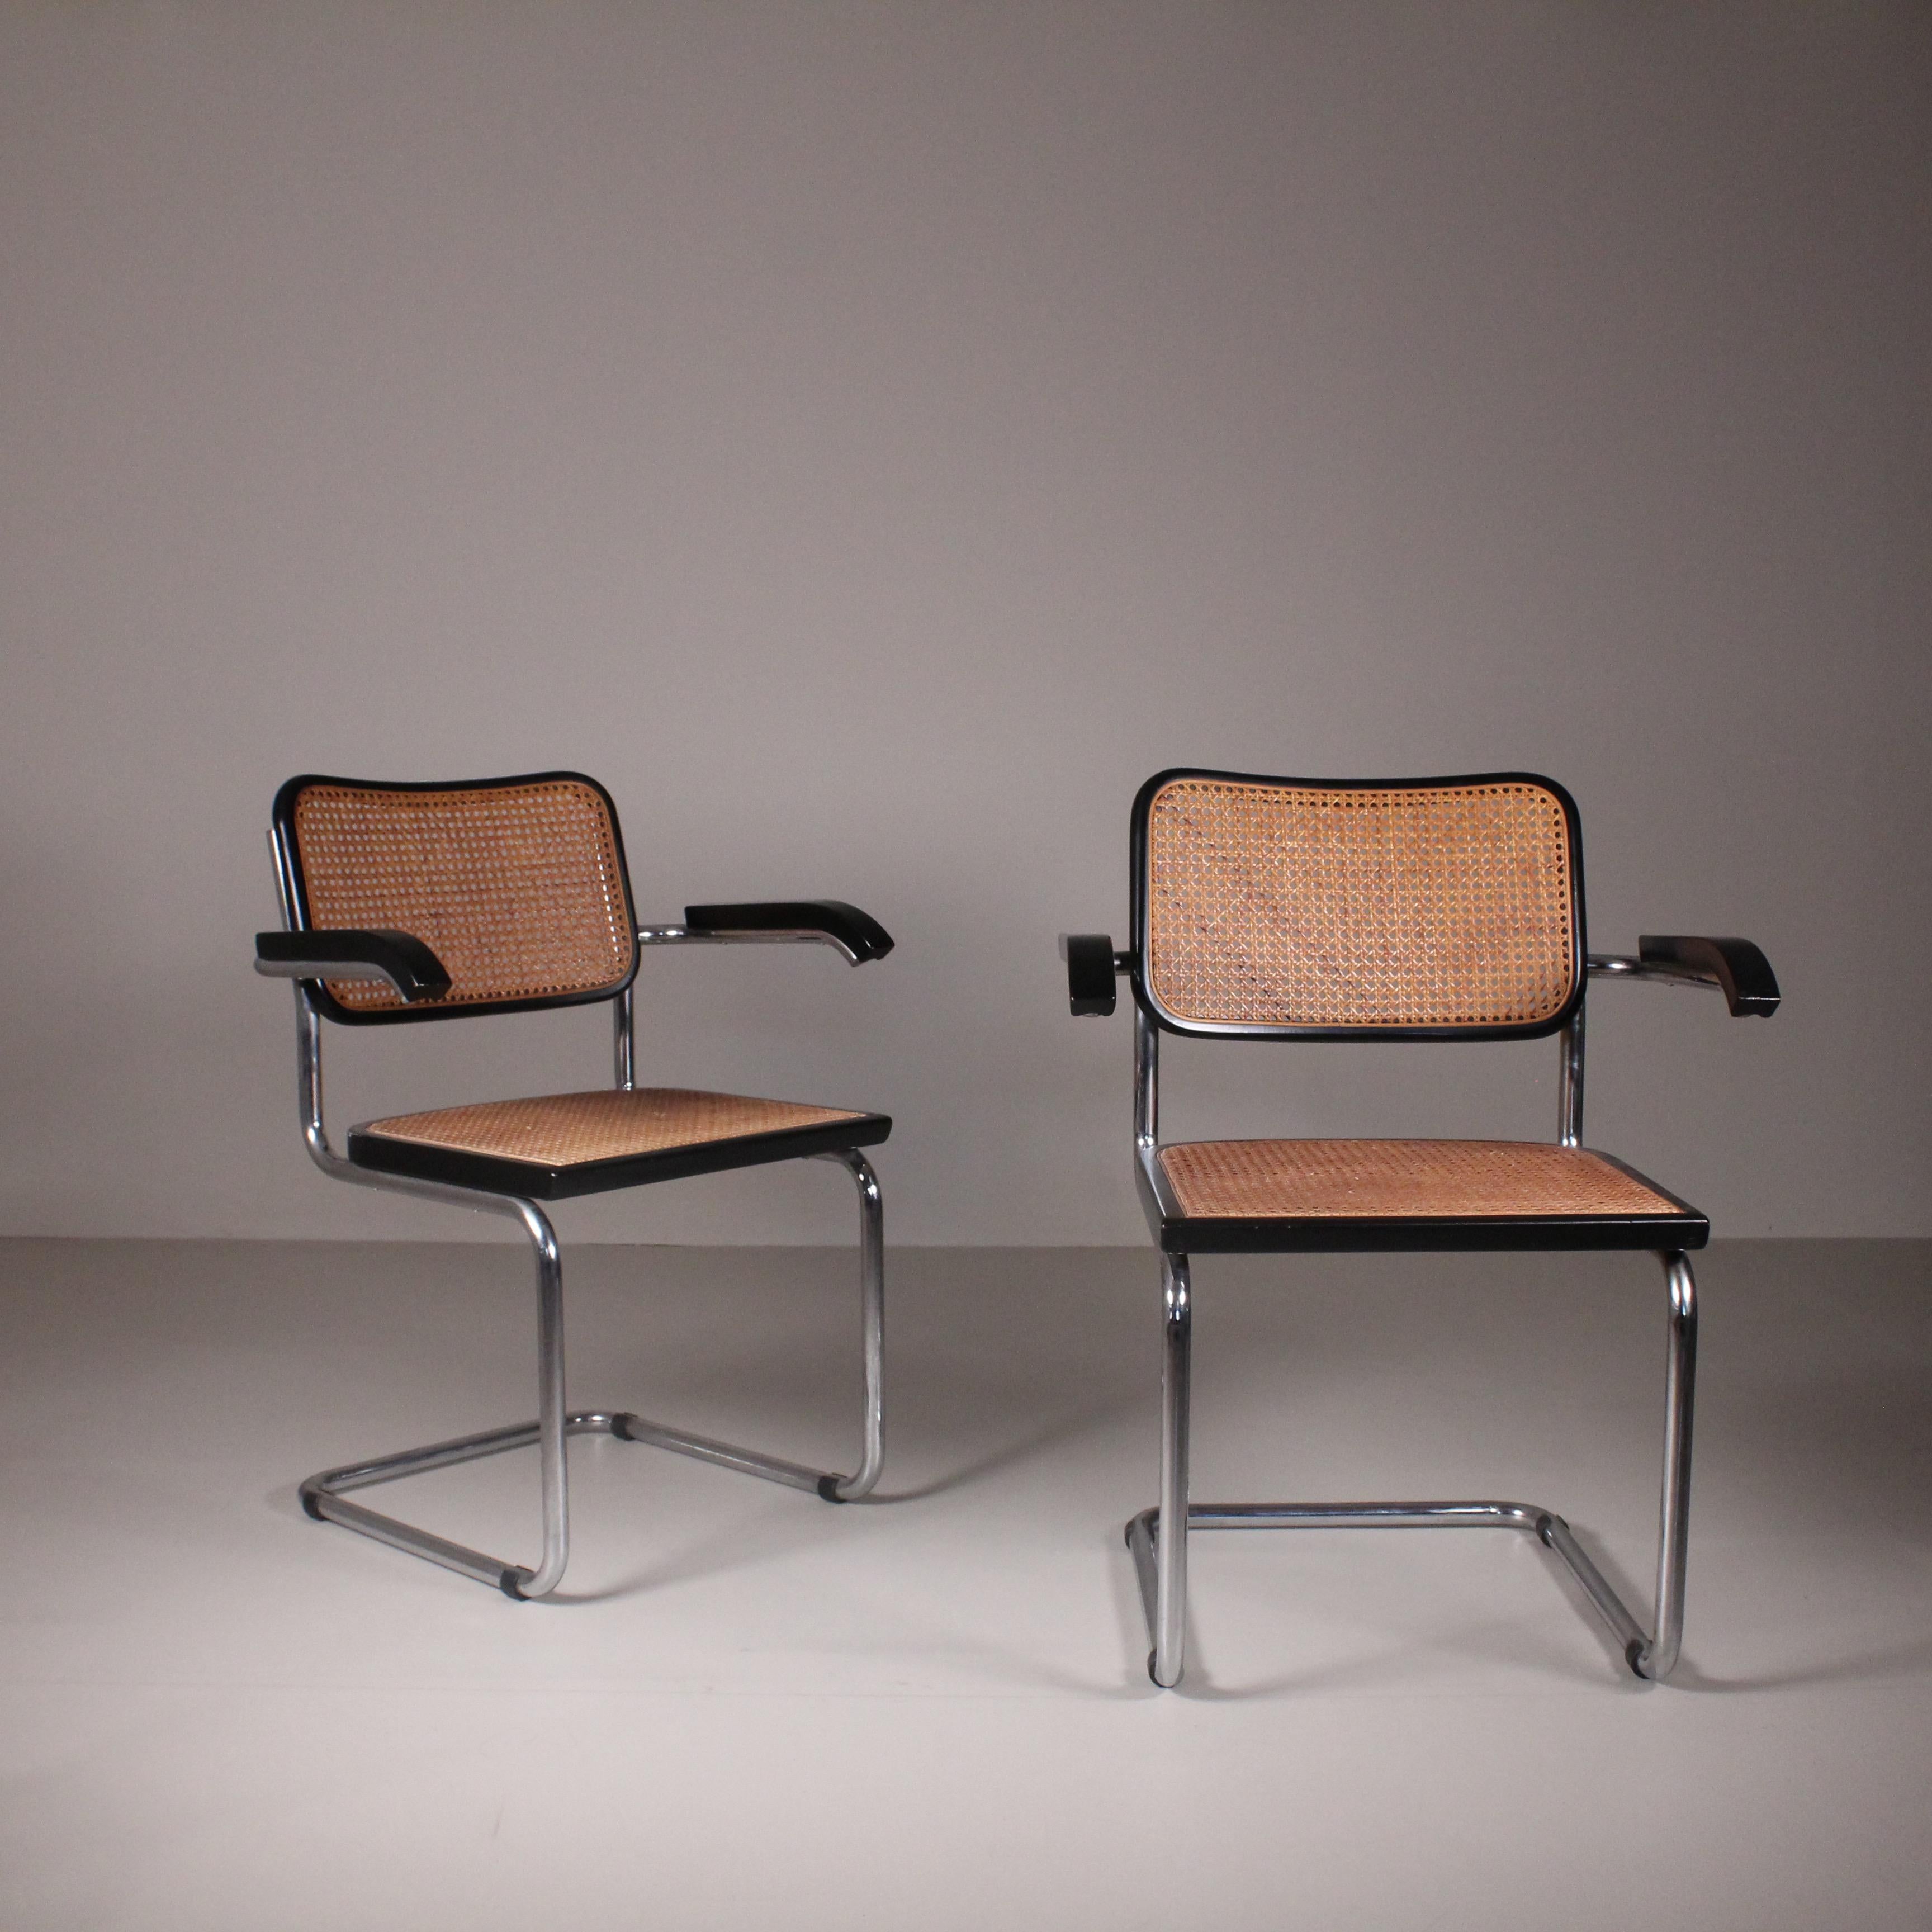 Ensemble de 2 chaises Cesca, Marcel Breuer, Gavina, 1970. L'ensemble de 2 chaises Cesca, conçu par Marcel Breuer en 1970 pour Gavina, incarne l'élégance moderniste et le style durable. Conçu selon une approche visionnaire, Breuer associe